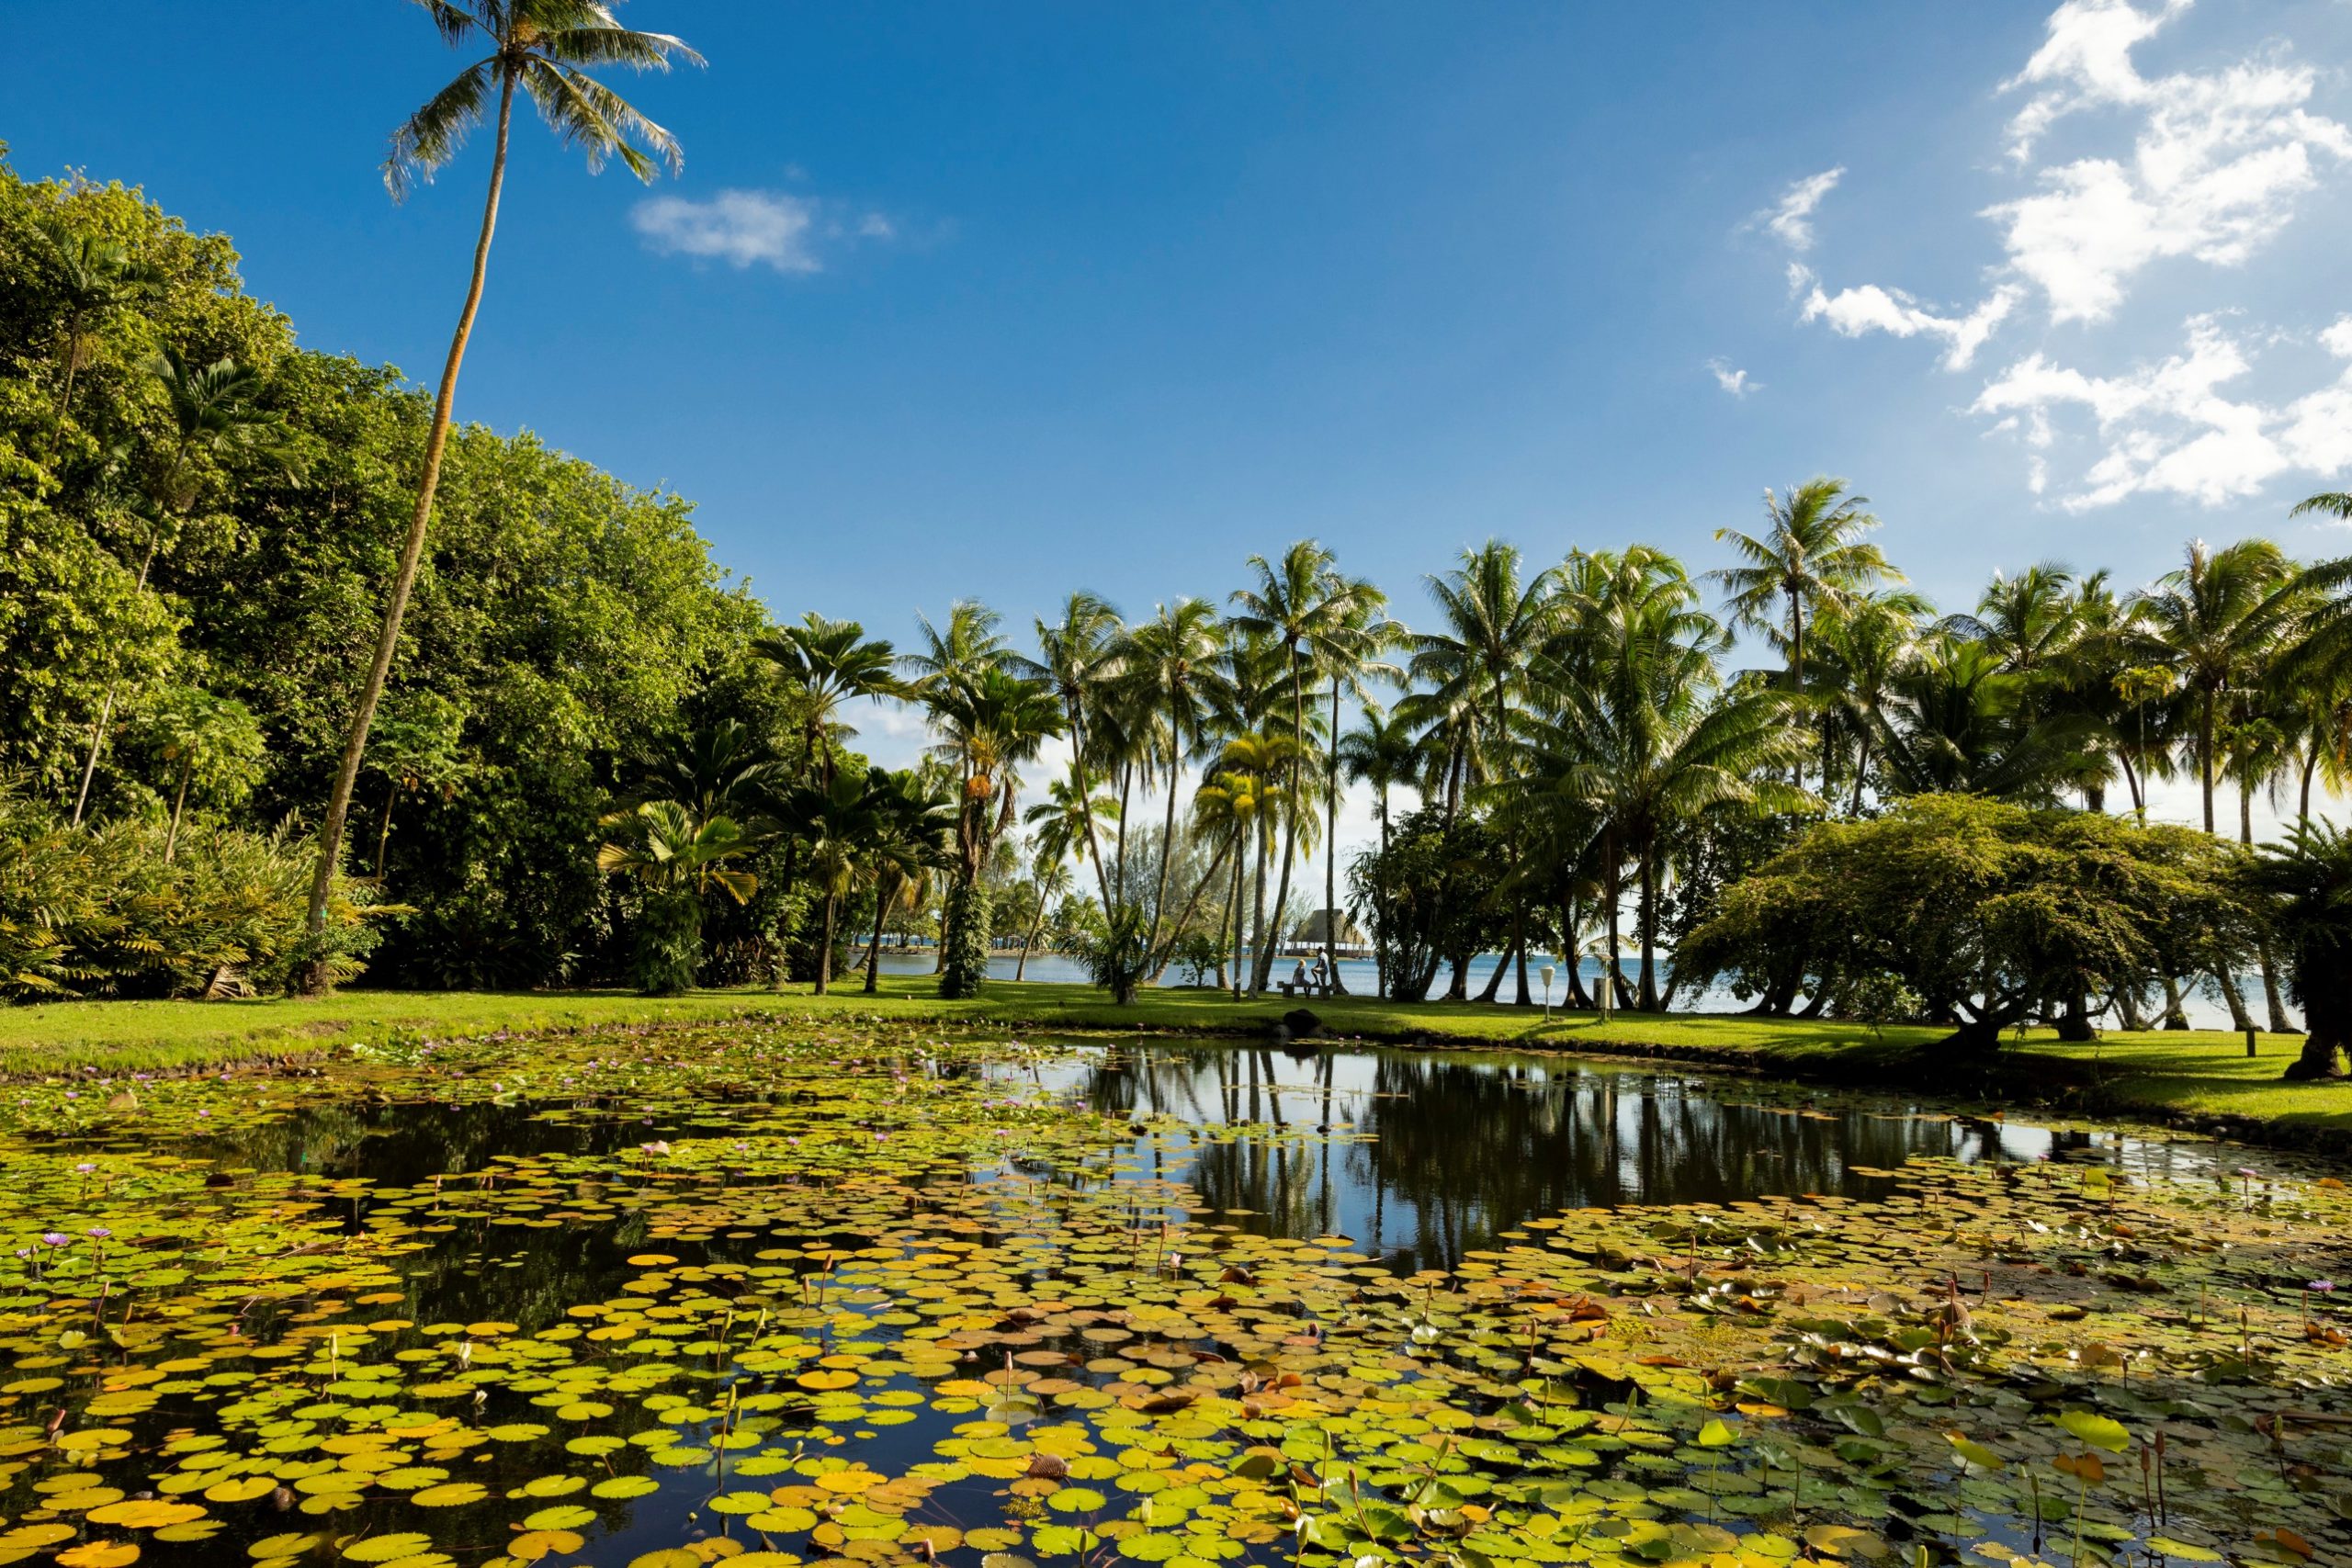 Giardini profumati e incantevoli parchi ne Le Isole di Tahiti in Polinesia